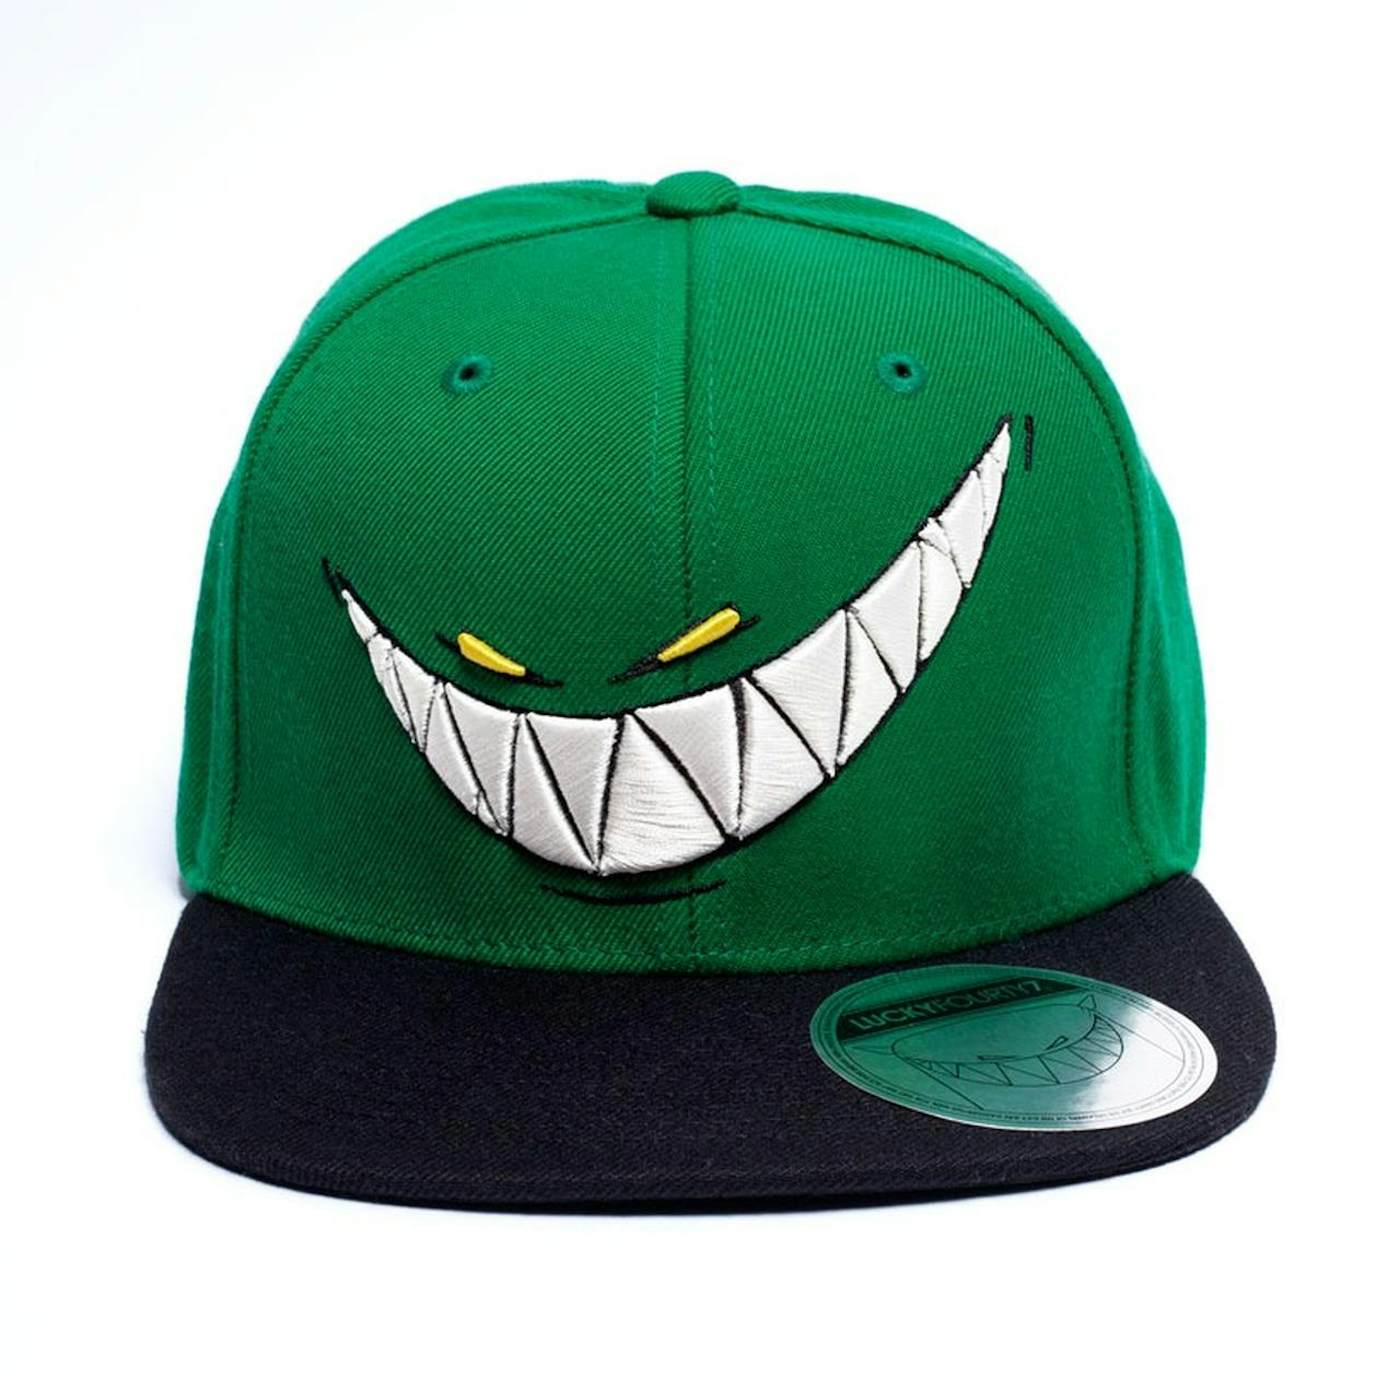 Feed Me Hat // Green Snapback Teeth